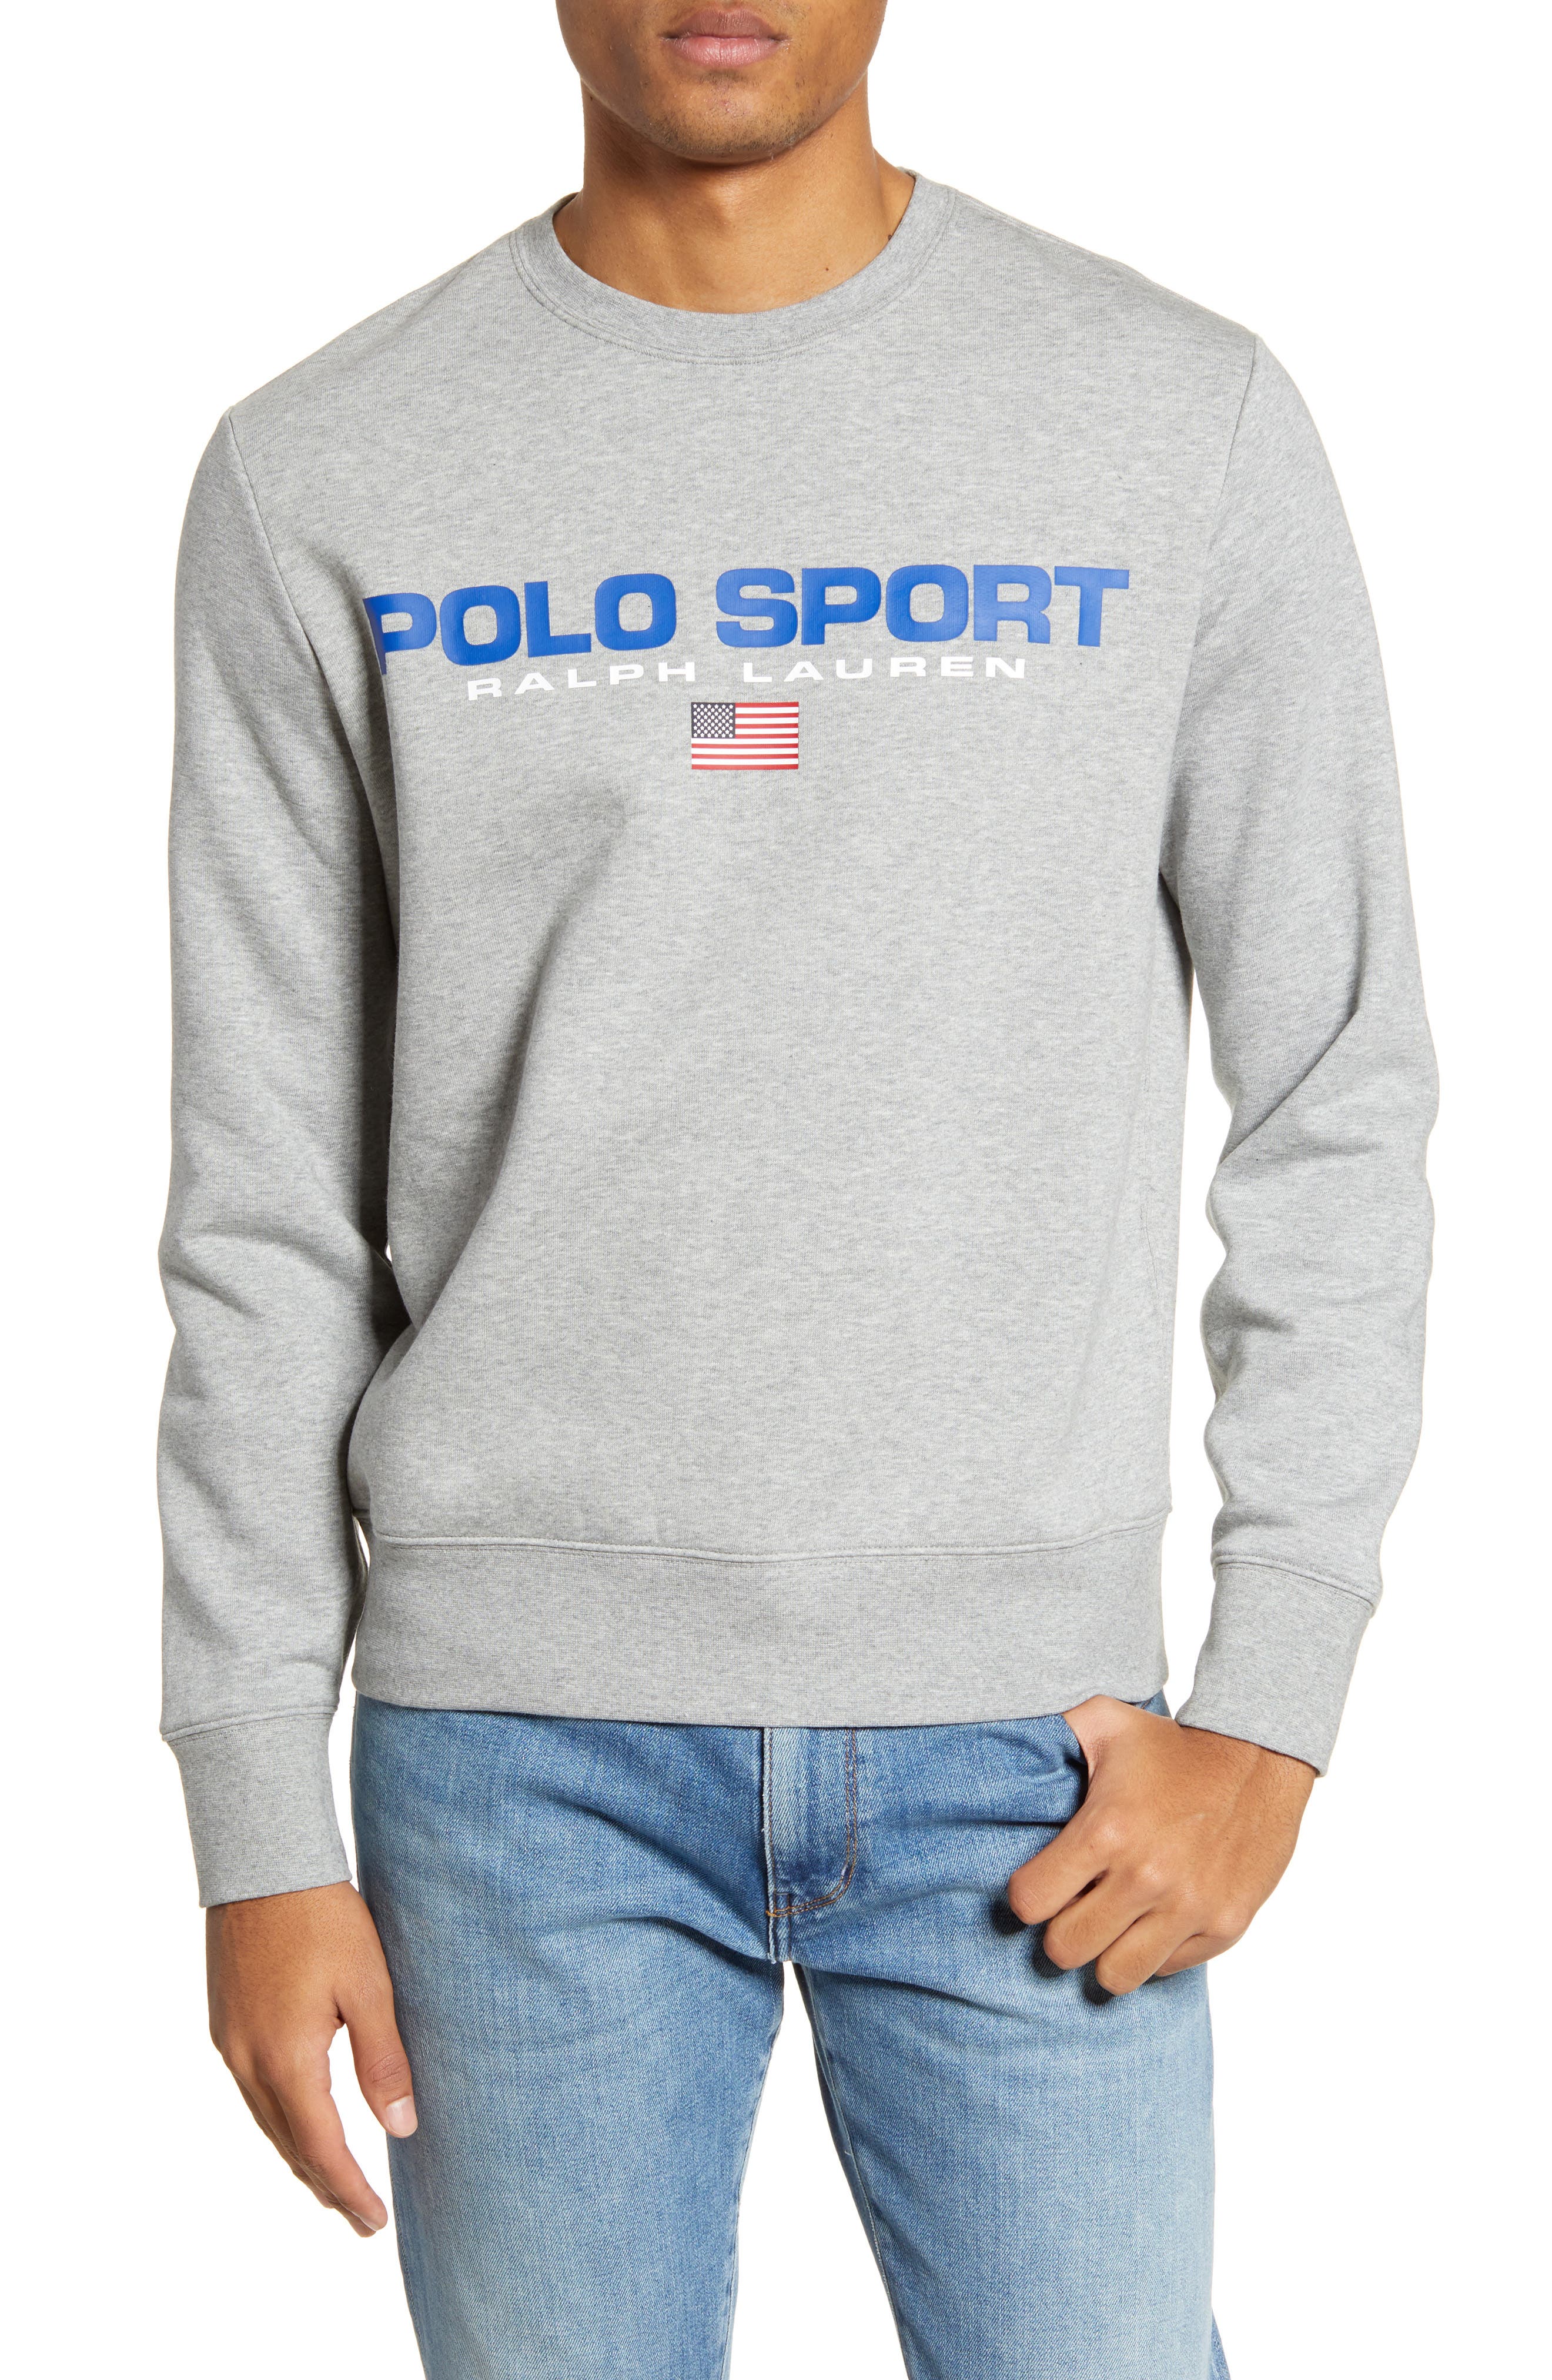 polo sport crewneck